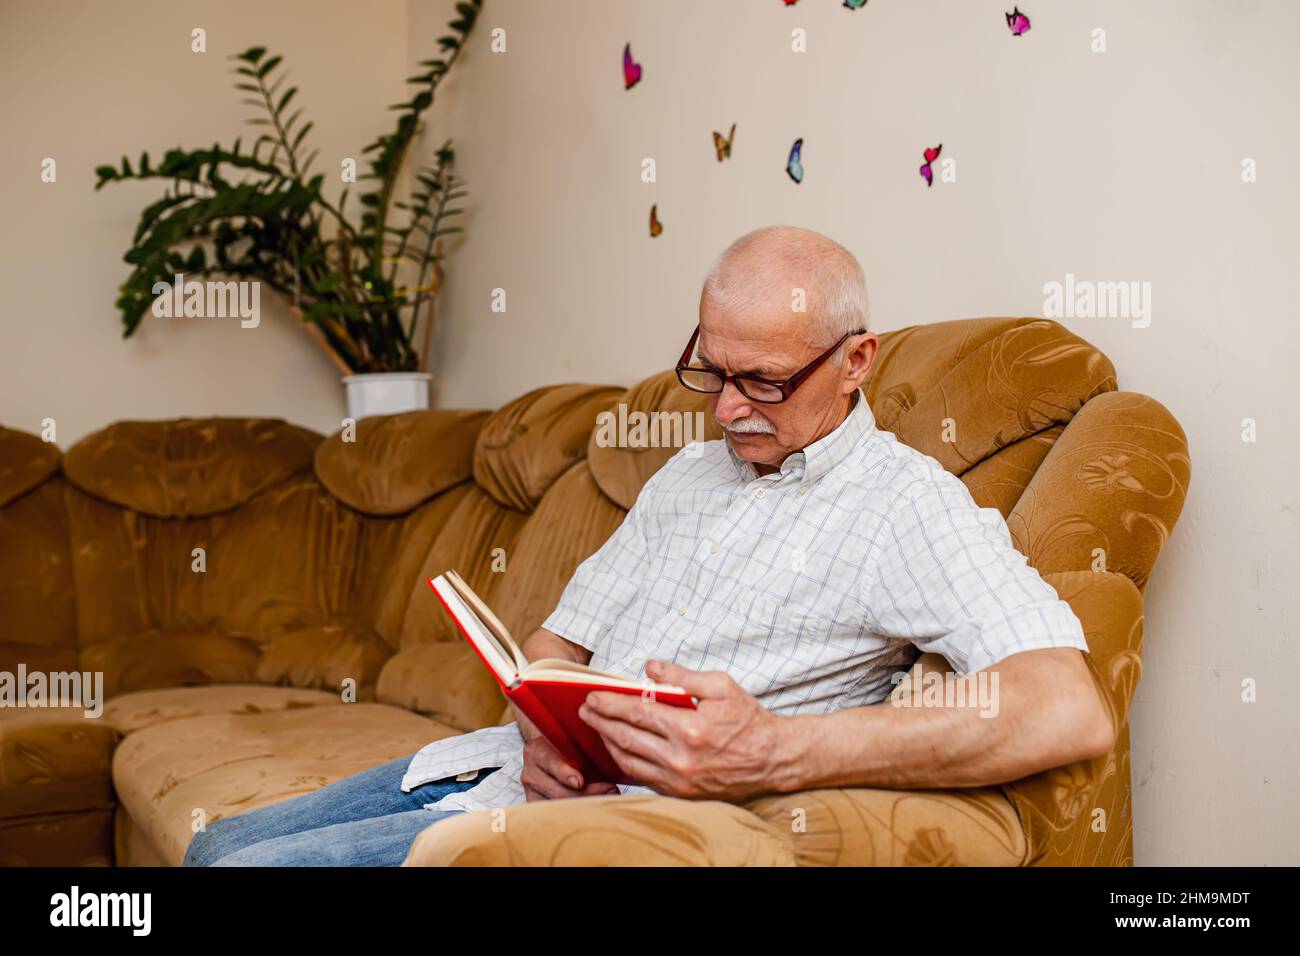 Porträt eines älteren, gutaussehenden weisen Mannes, der in einem Raum auf einem Sofa sitzt und ein akademisches Buch liest. Lächelnder, reifer 60s kaukasischer Mann, der die Bibel der Familie liest Stockfoto